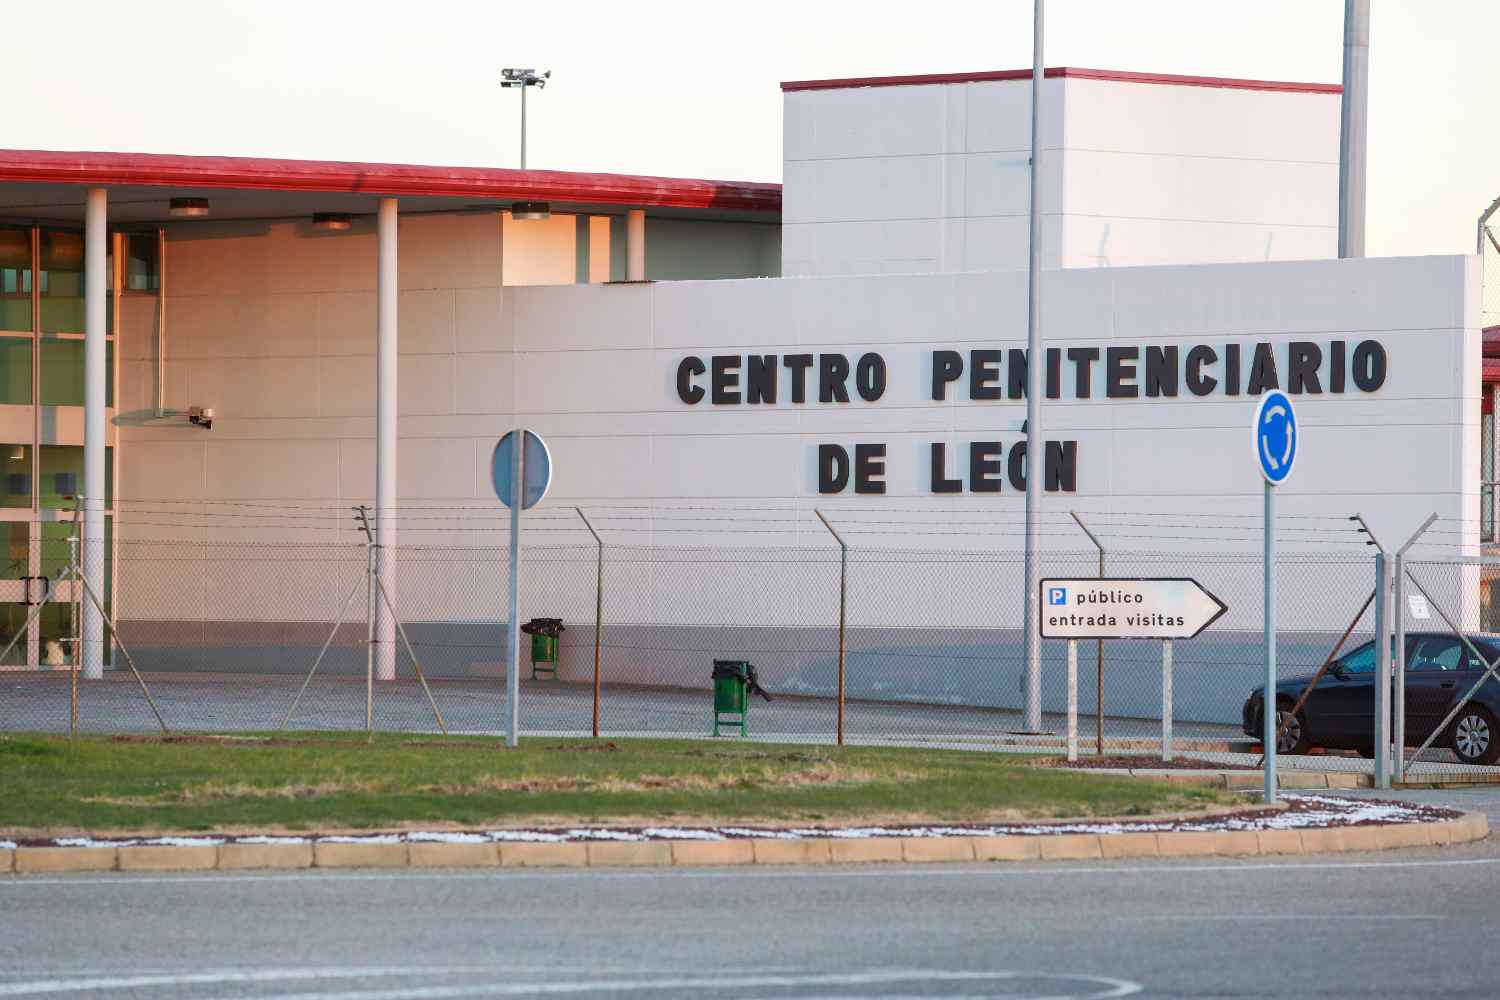 Centro Penitenciario de Mansilla de las Mulas (León)